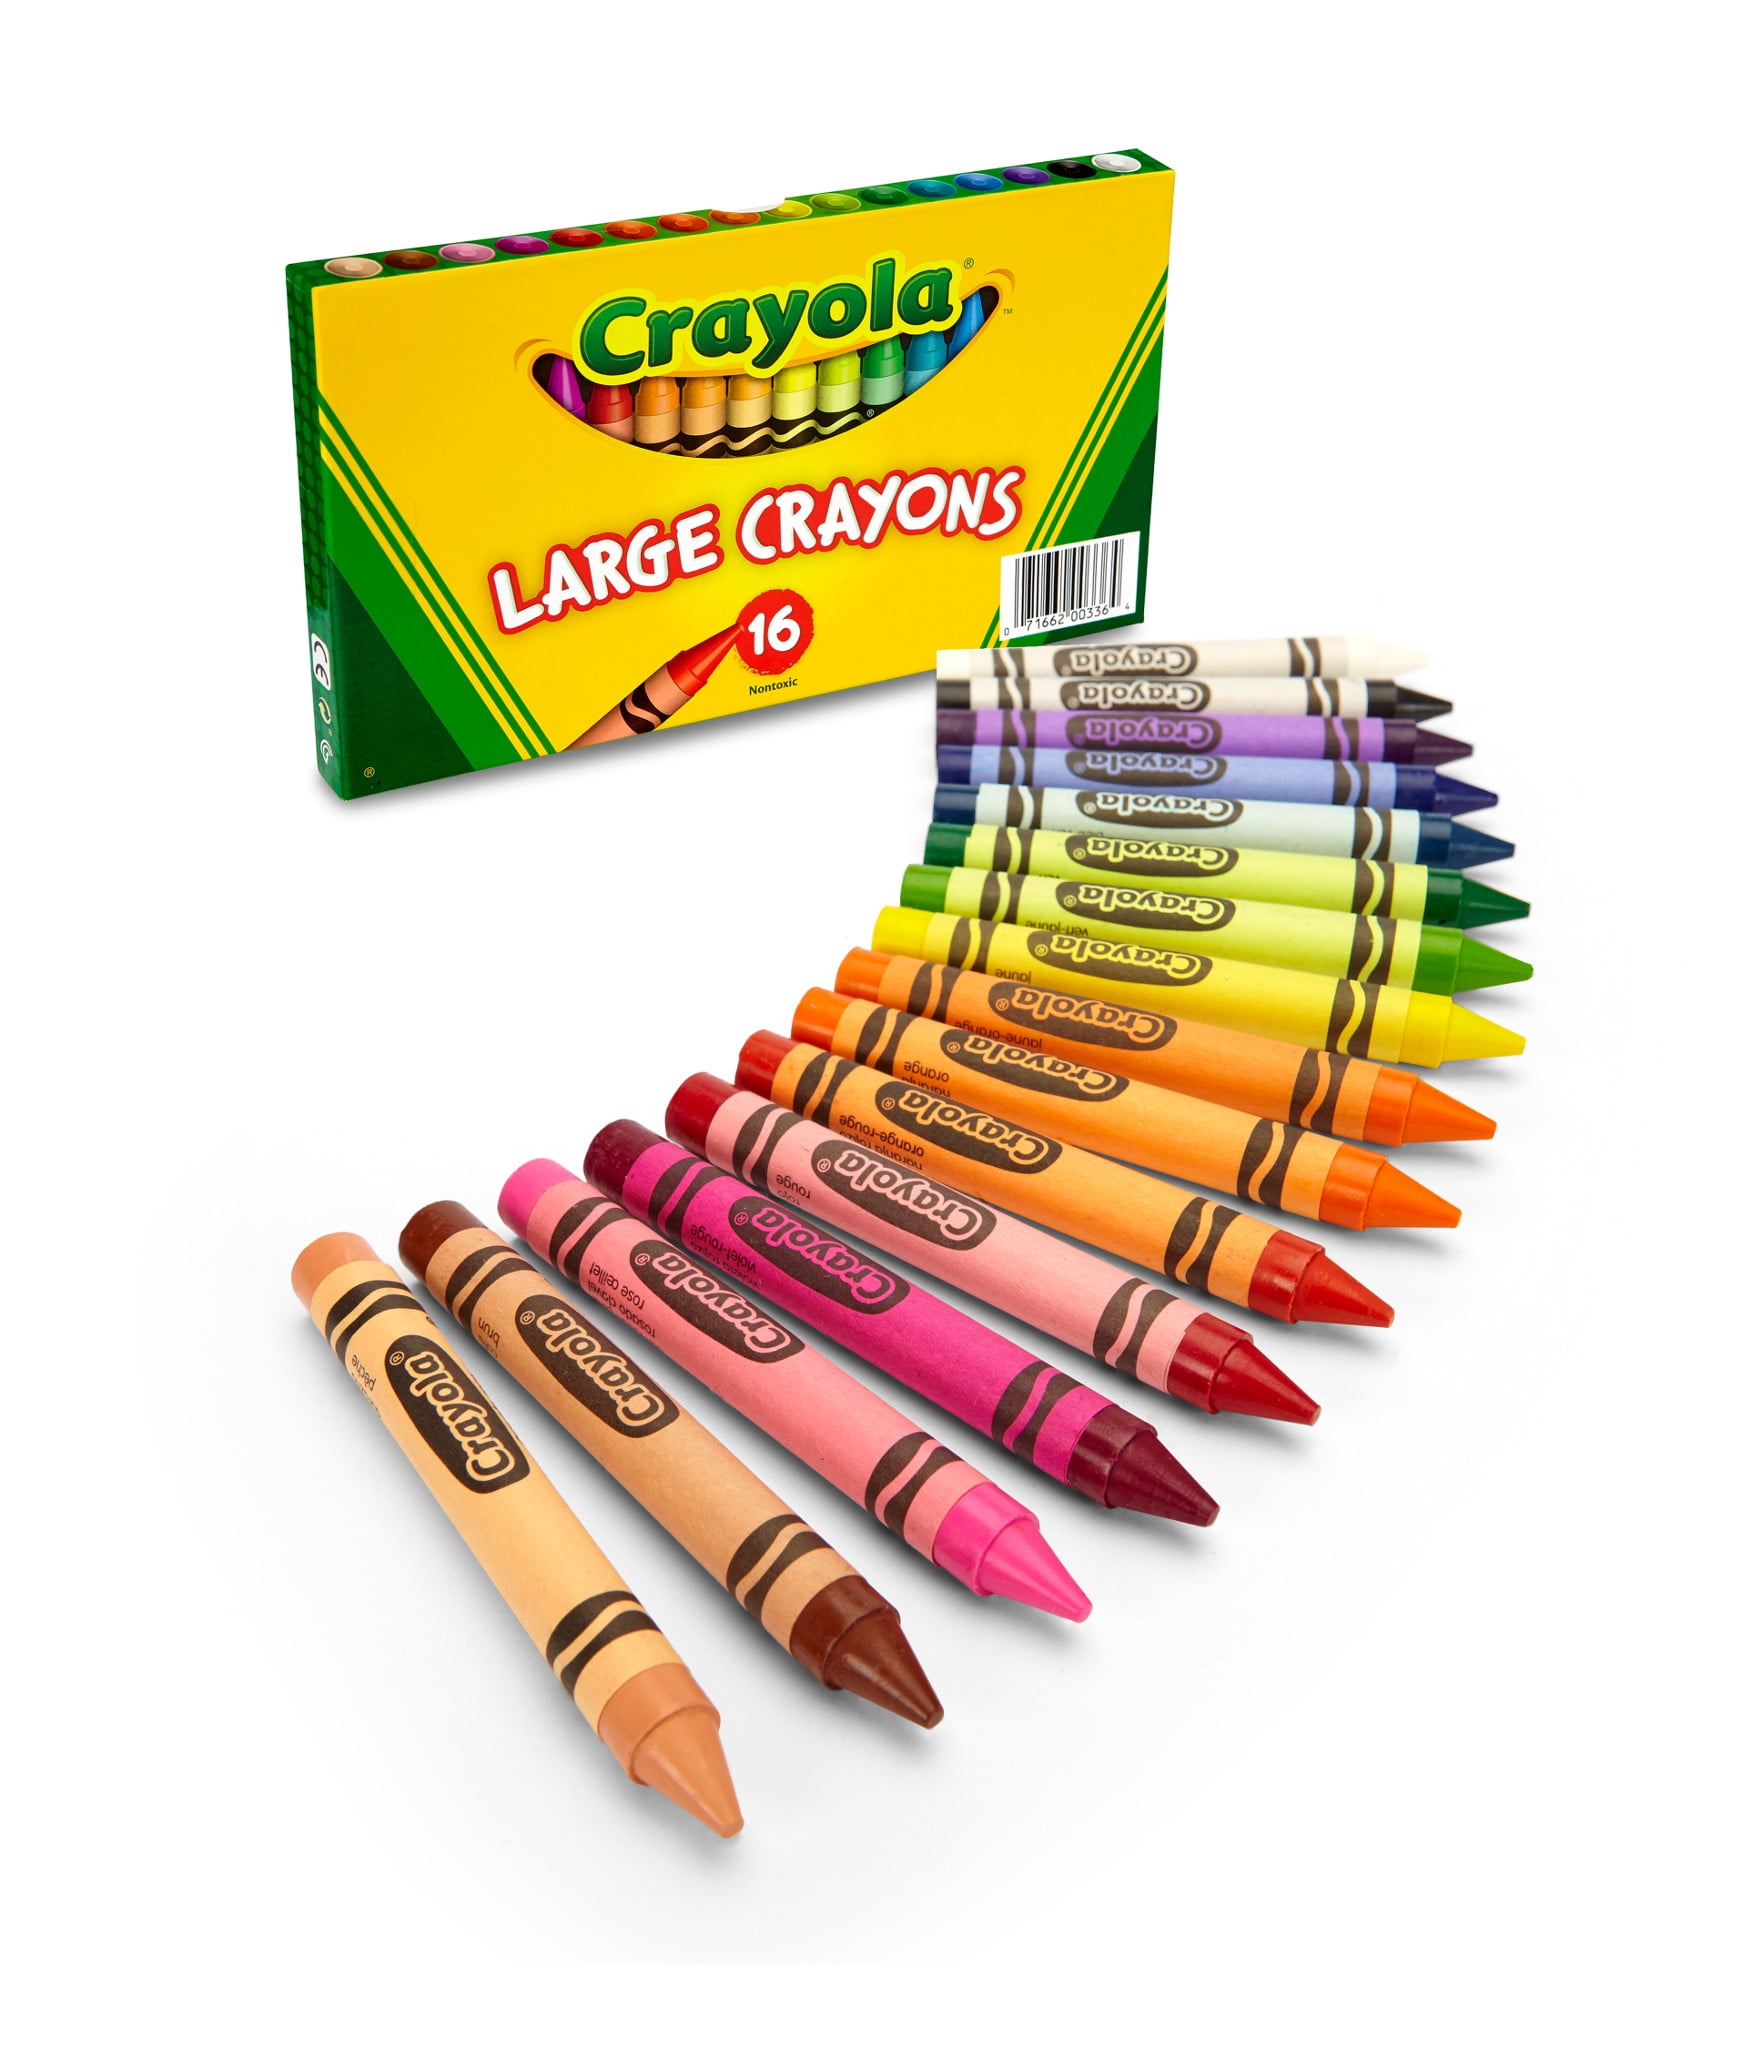 Crayola Large Washable Crayons-16/Pkg